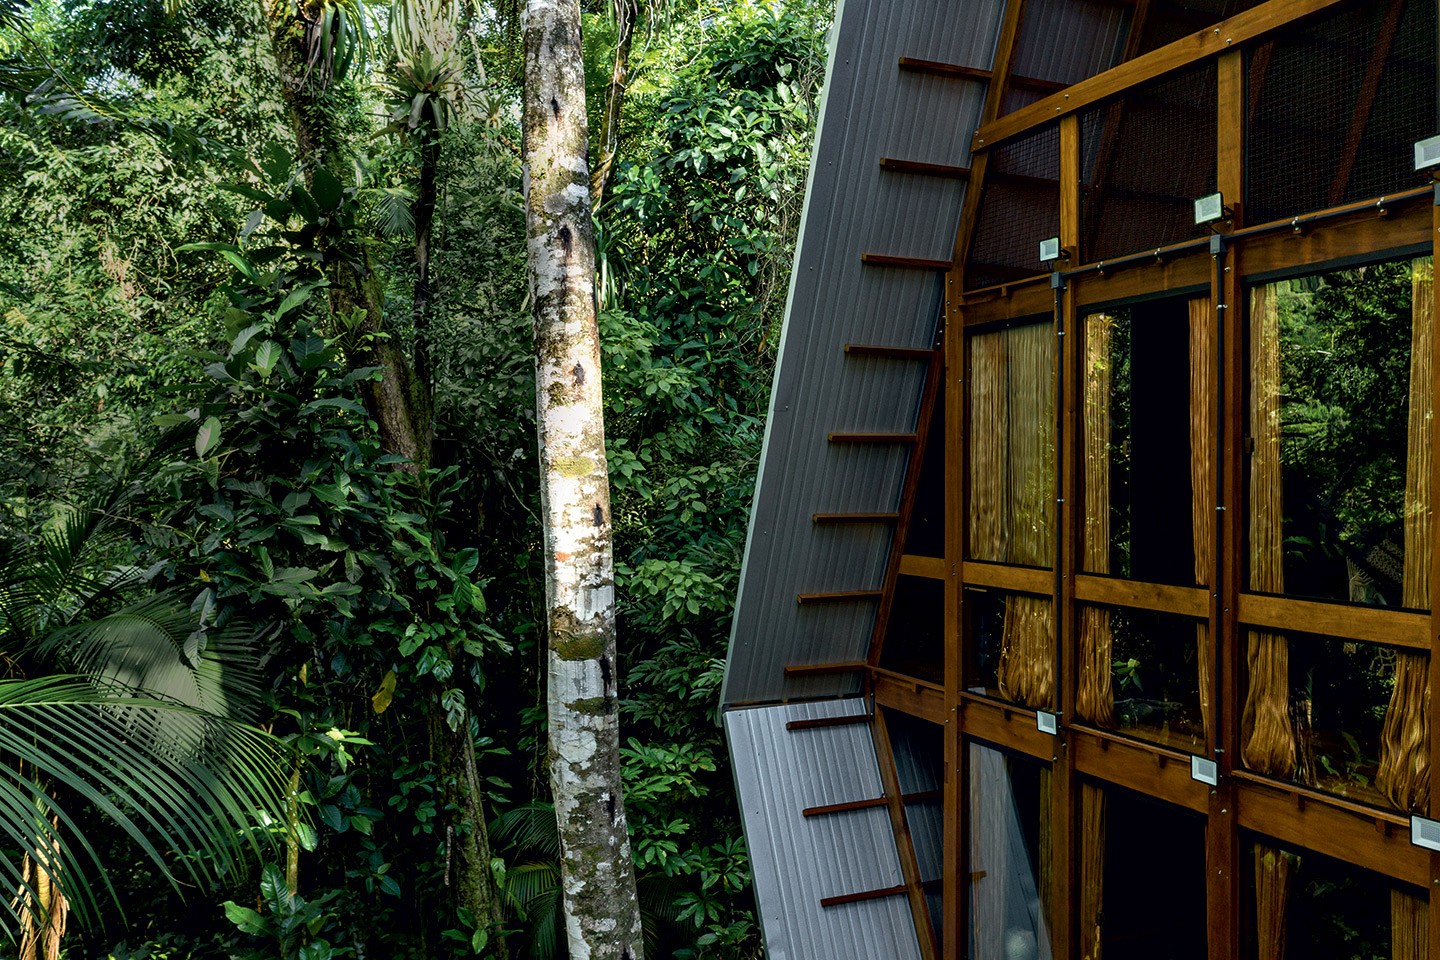 Casa imersa na floresta de Paraty aposta na biomimética e transforma a natureza em seu entorno (Foto: Fran Parente)